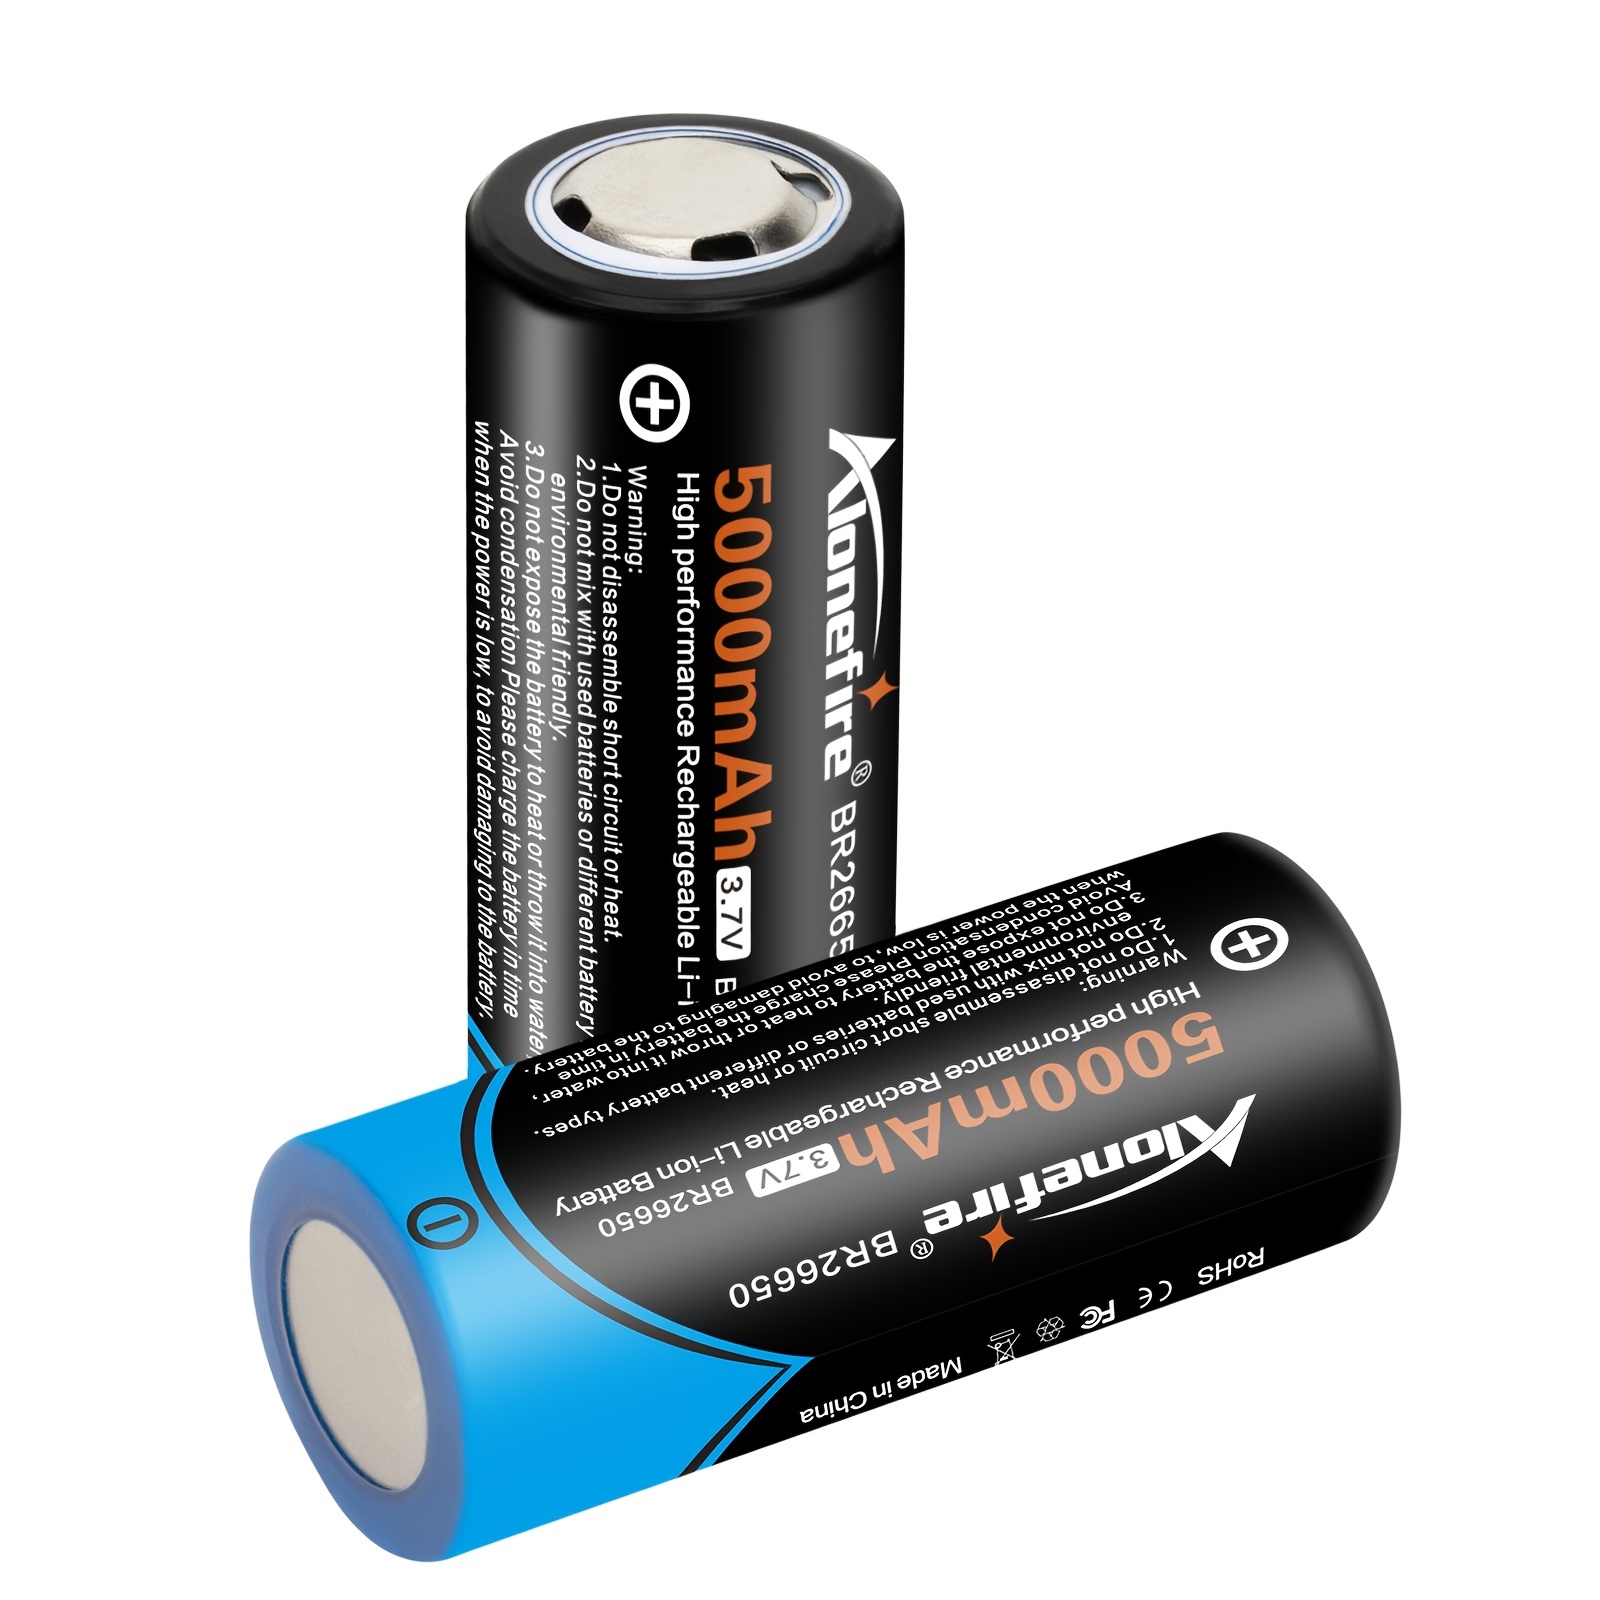 WholeFire Chargeur de Batterie Universel Intelligent avec écran LED et 4  Piles Rechargeables AAA 3,7 V 18650 26650 22650 17670 16340(RCR123A) :  : High-Tech